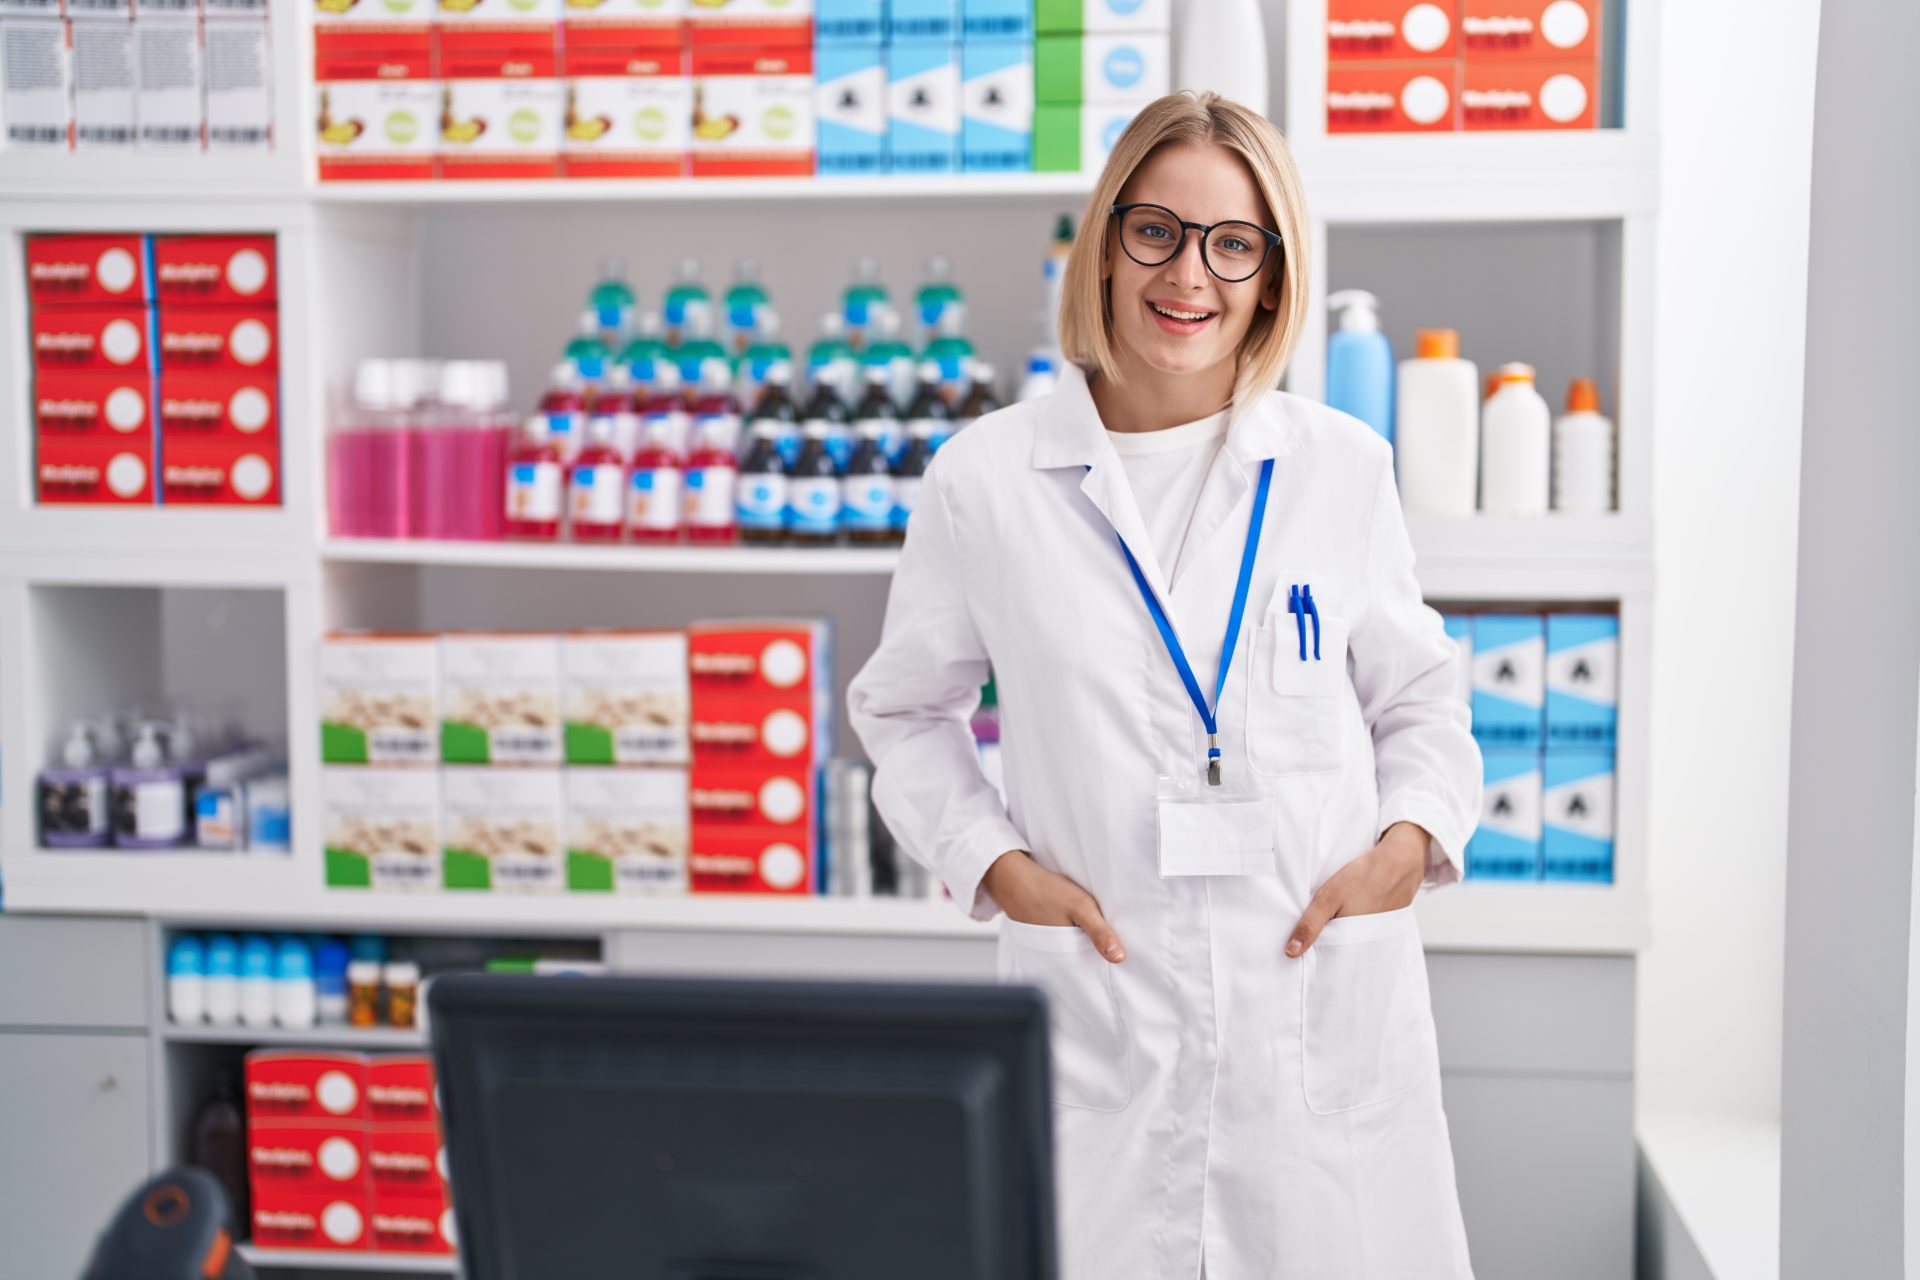 CPF nas farmácias: por que você não deve fornecer seus dados?